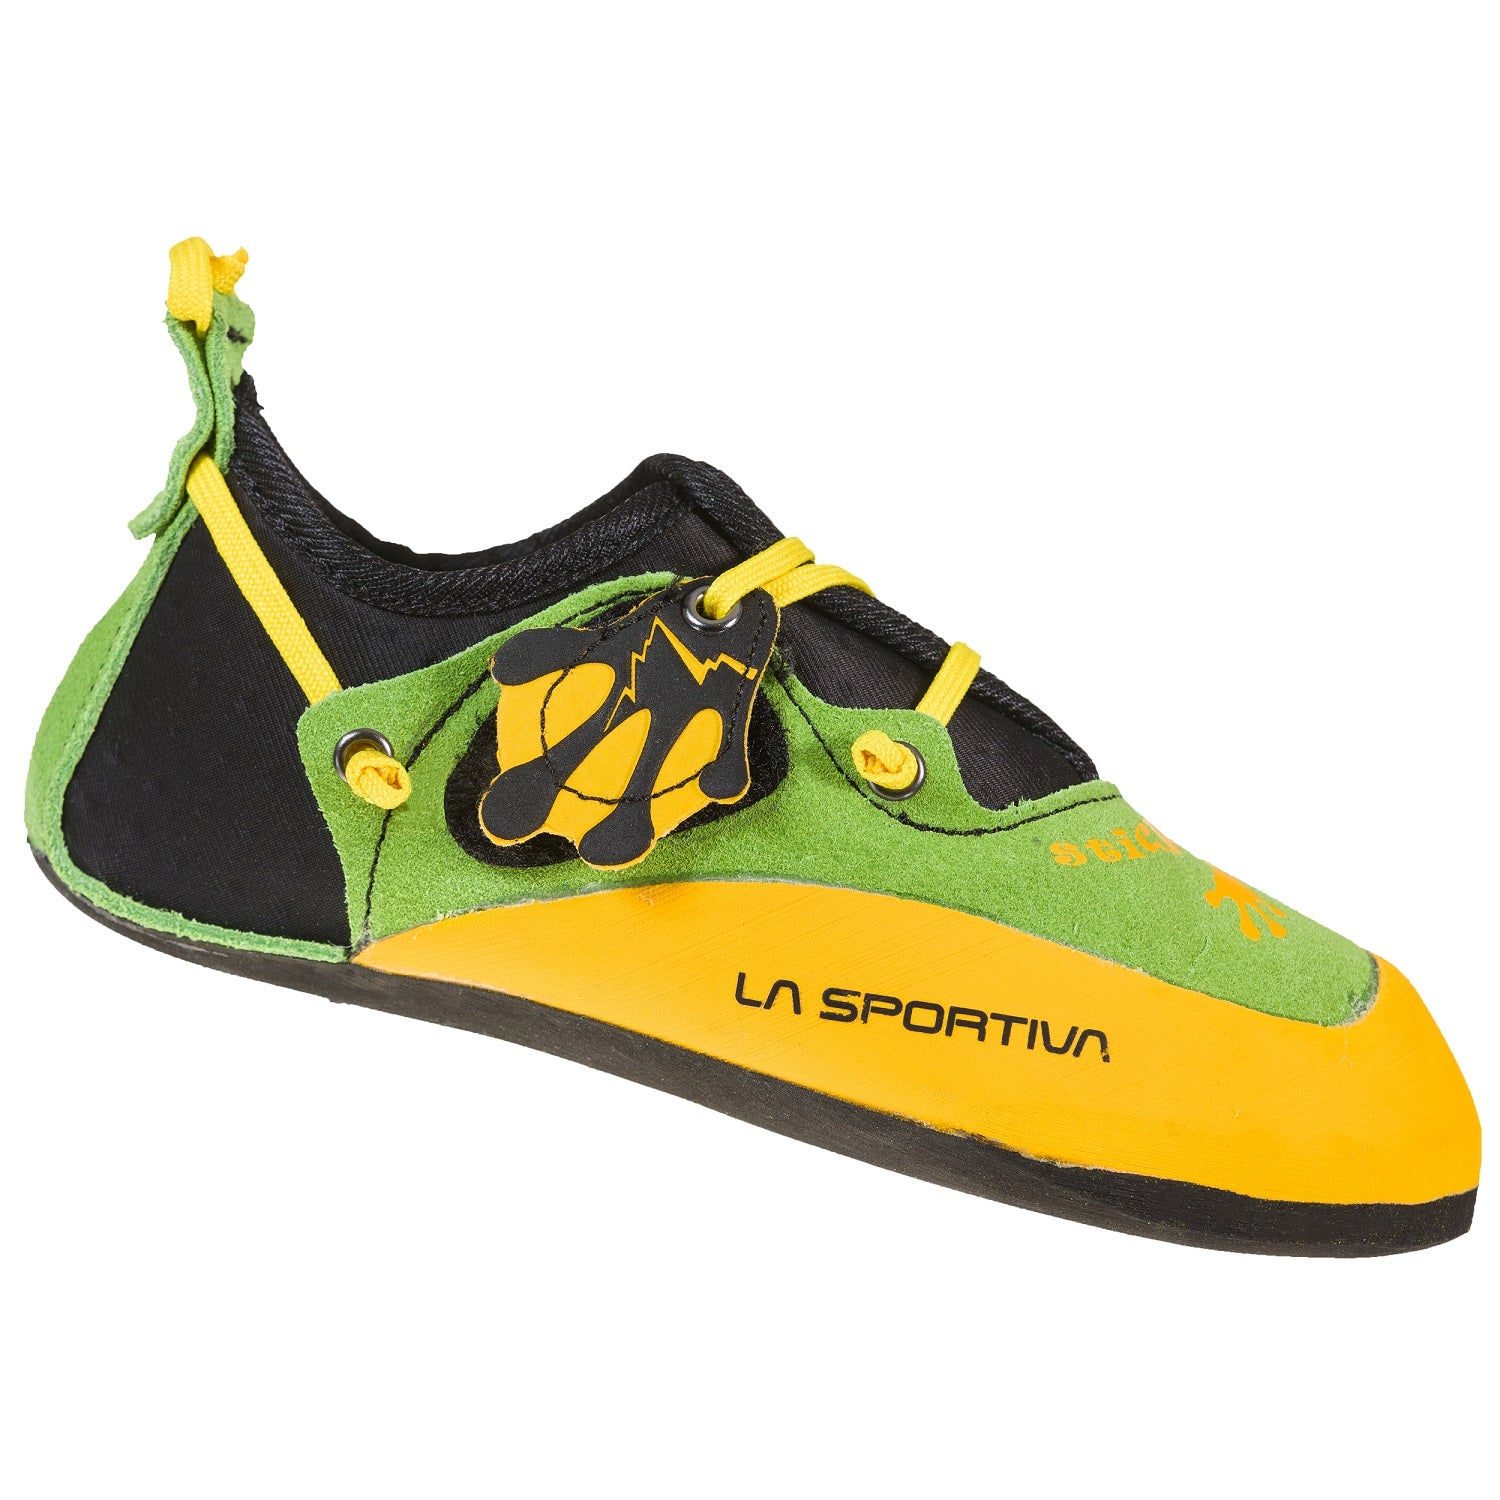 La Sportiva Stickit Kids Climbing Shoe Chili-Poppy